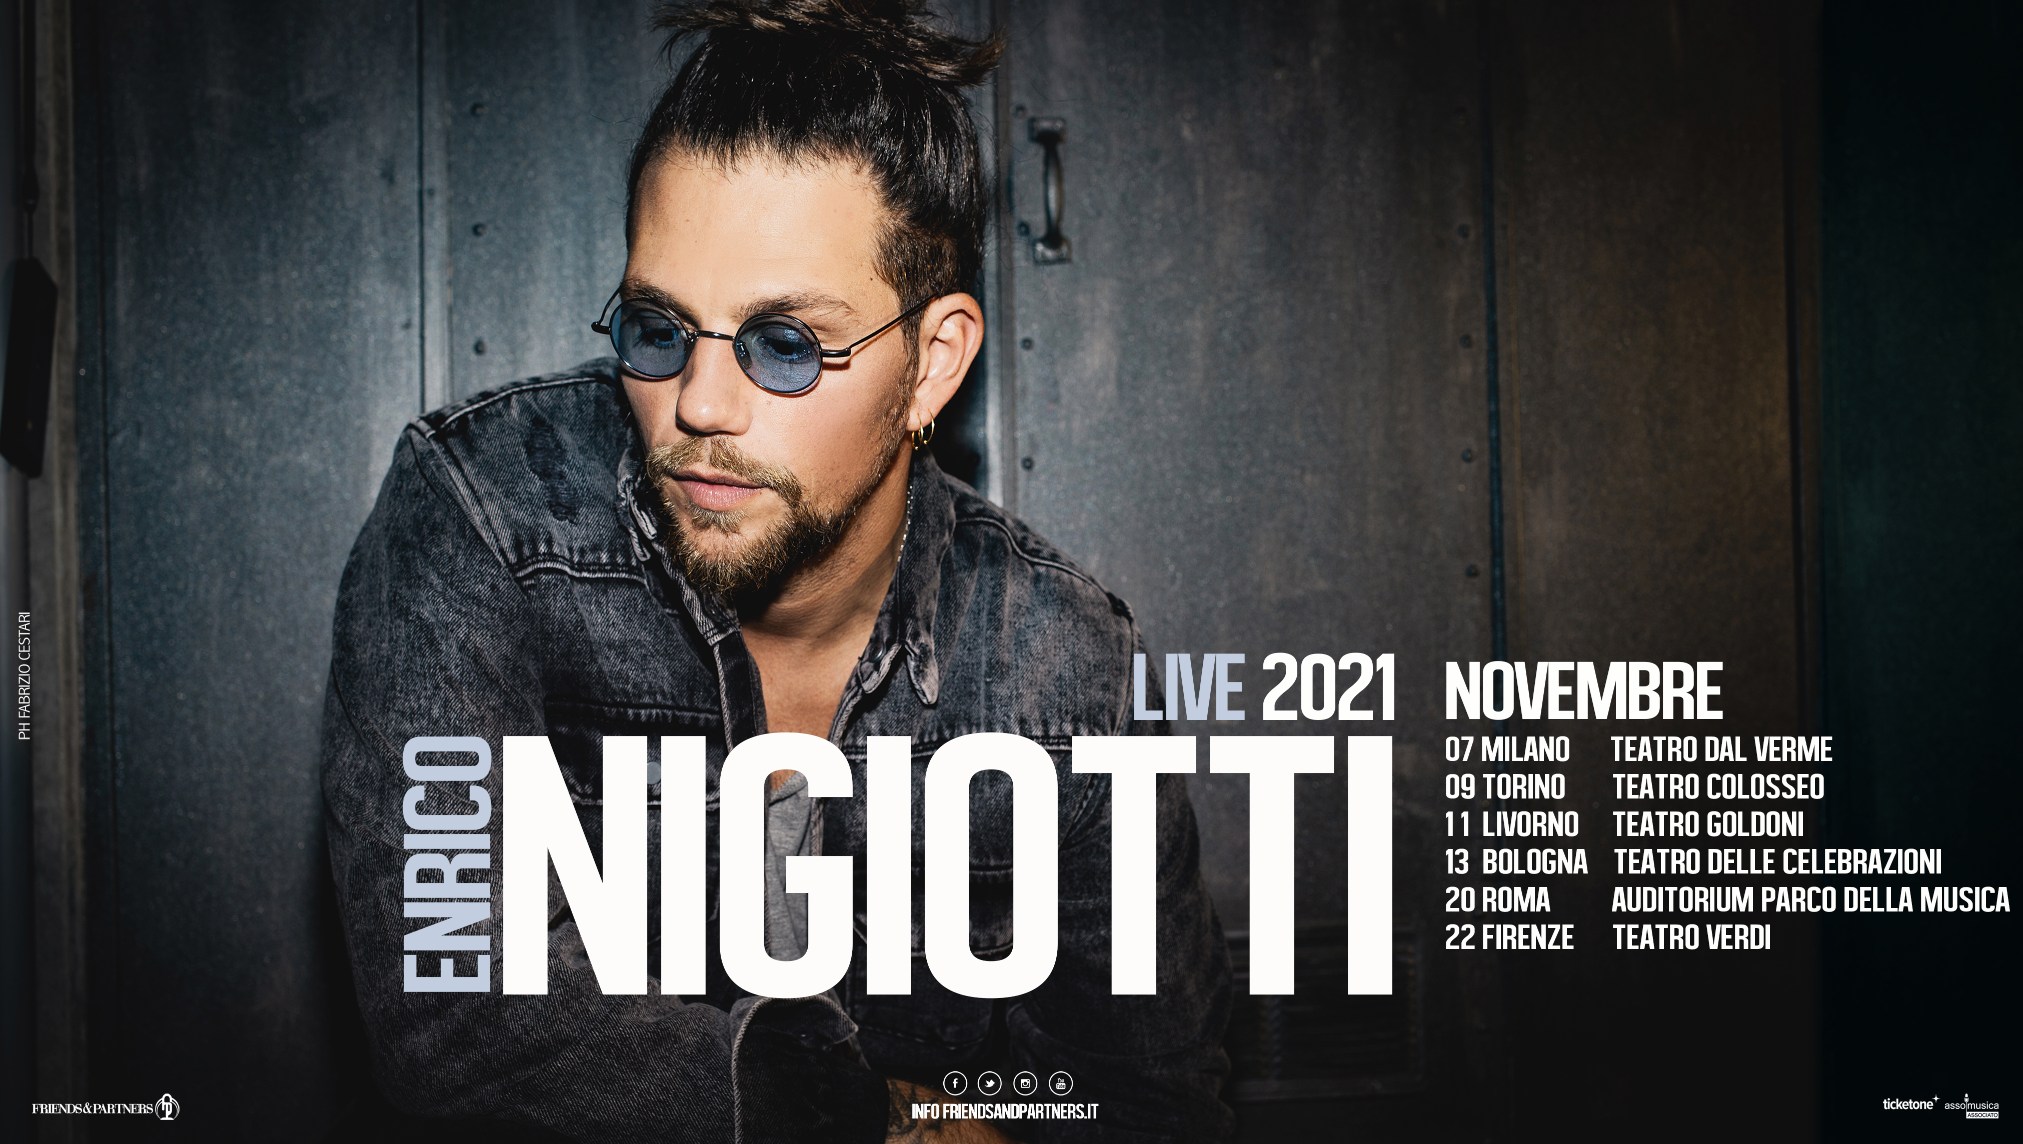 enrico-nigiotti-album-e-tour---immagini-Enrico_Nigiotti_locandina_tour_novembre_2021_(2)_(1).jpg